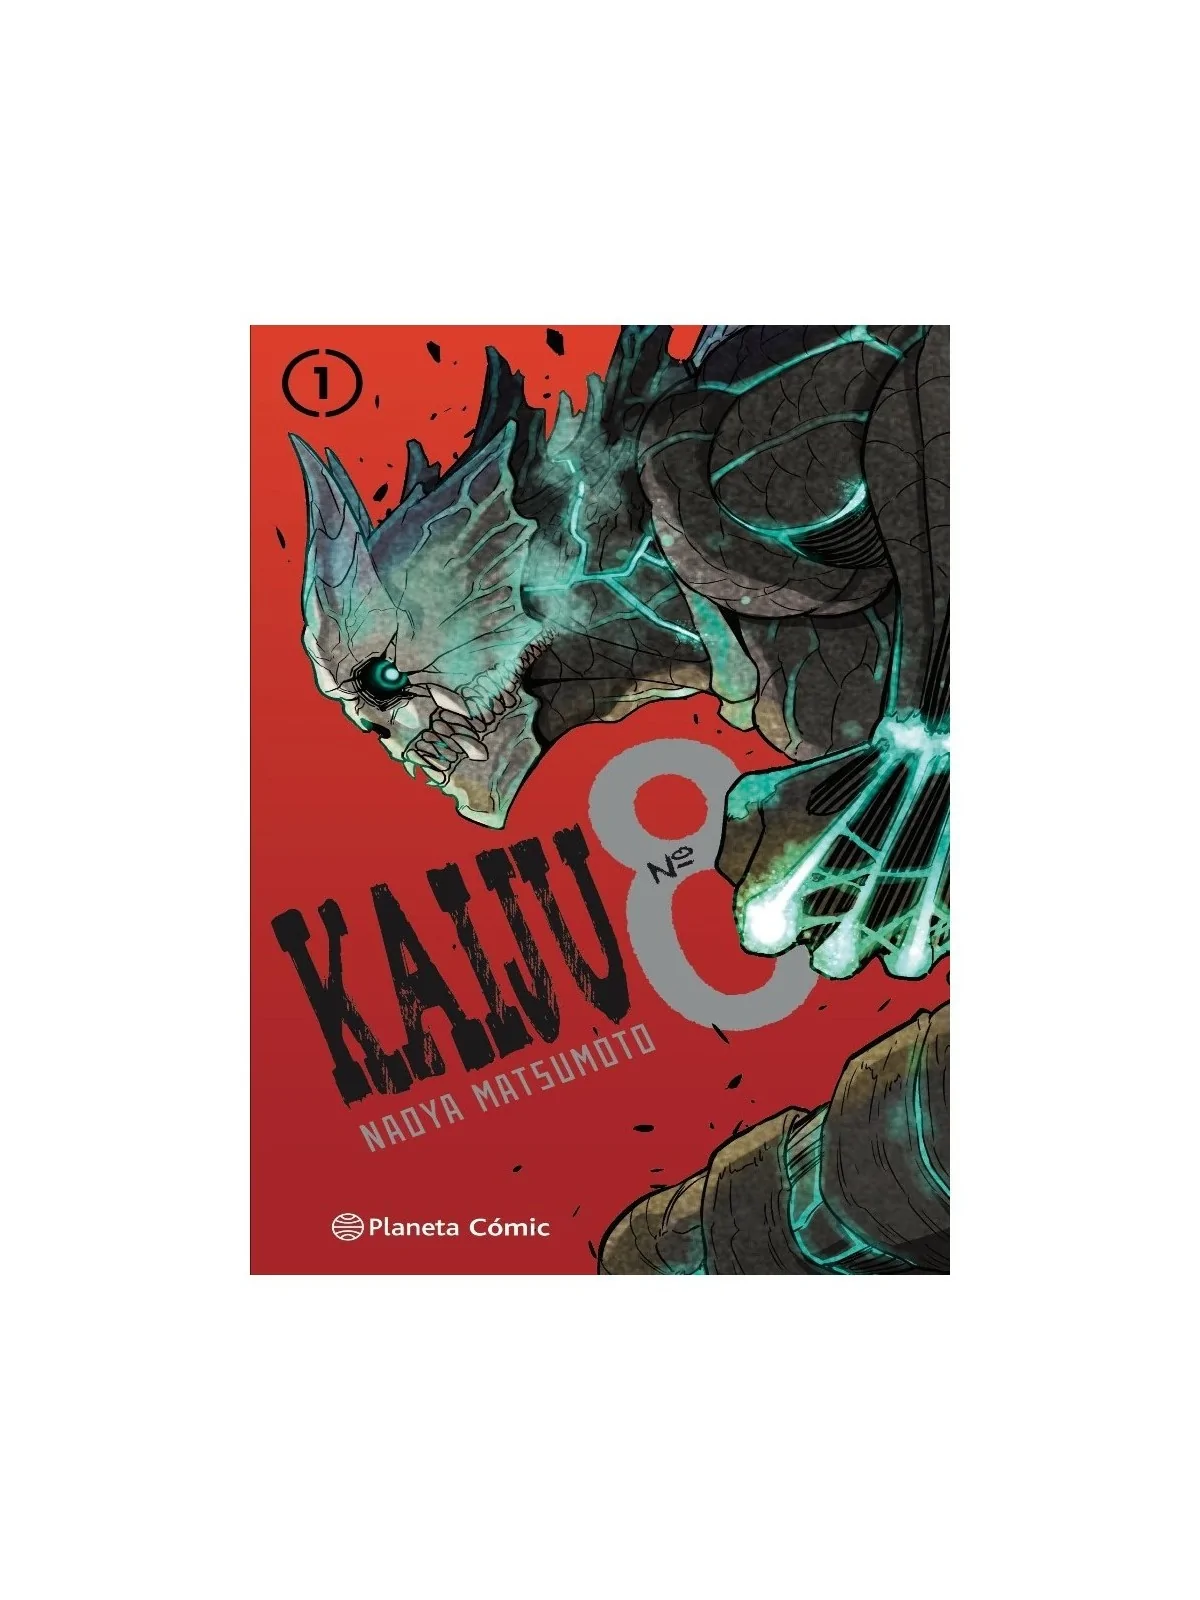 Comprar Kaiju 8 01 barato al mejor precio 2,80 € de Planeta Comic